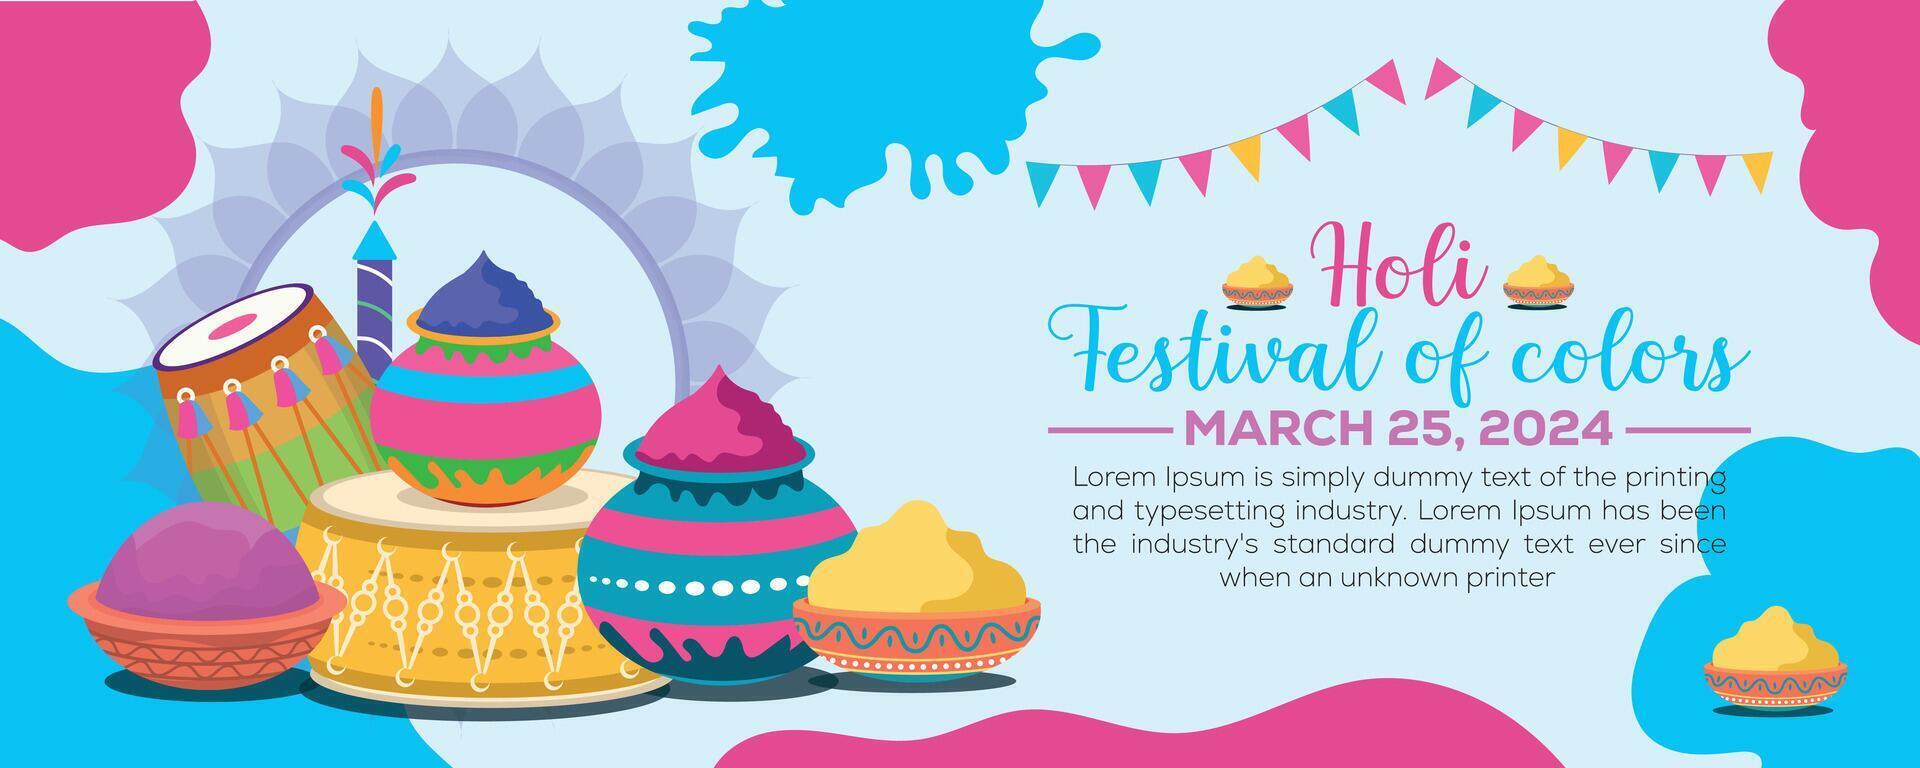 gelukkig holi kleurrijk banier sjabloon Indisch hindoeïsme festival viering, sociaal media poster ontwerp en horizontaal banier sjabloon voor holi festival viering vector